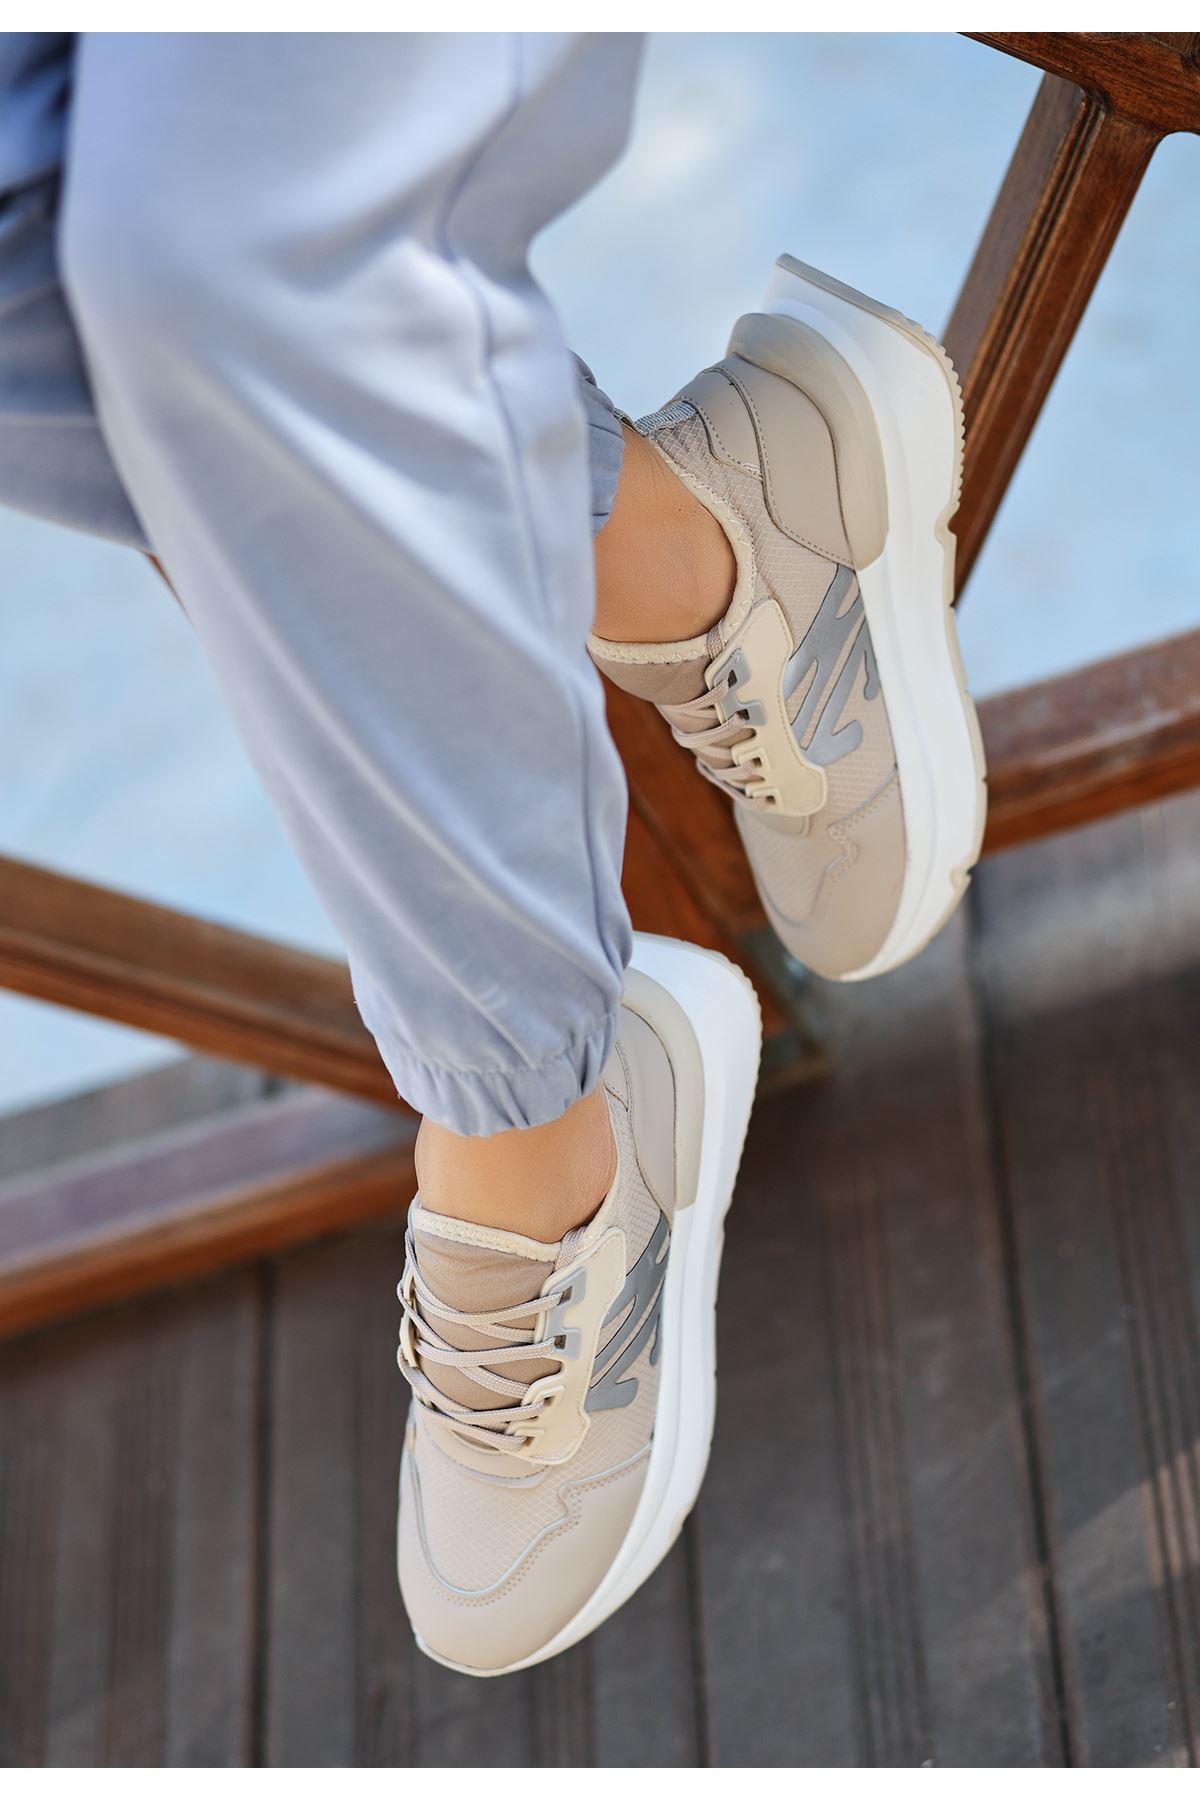 Salamanca Mat Deri Fileli Bağcıklı Kadın Sneakers Spor Ayakkabı Ten